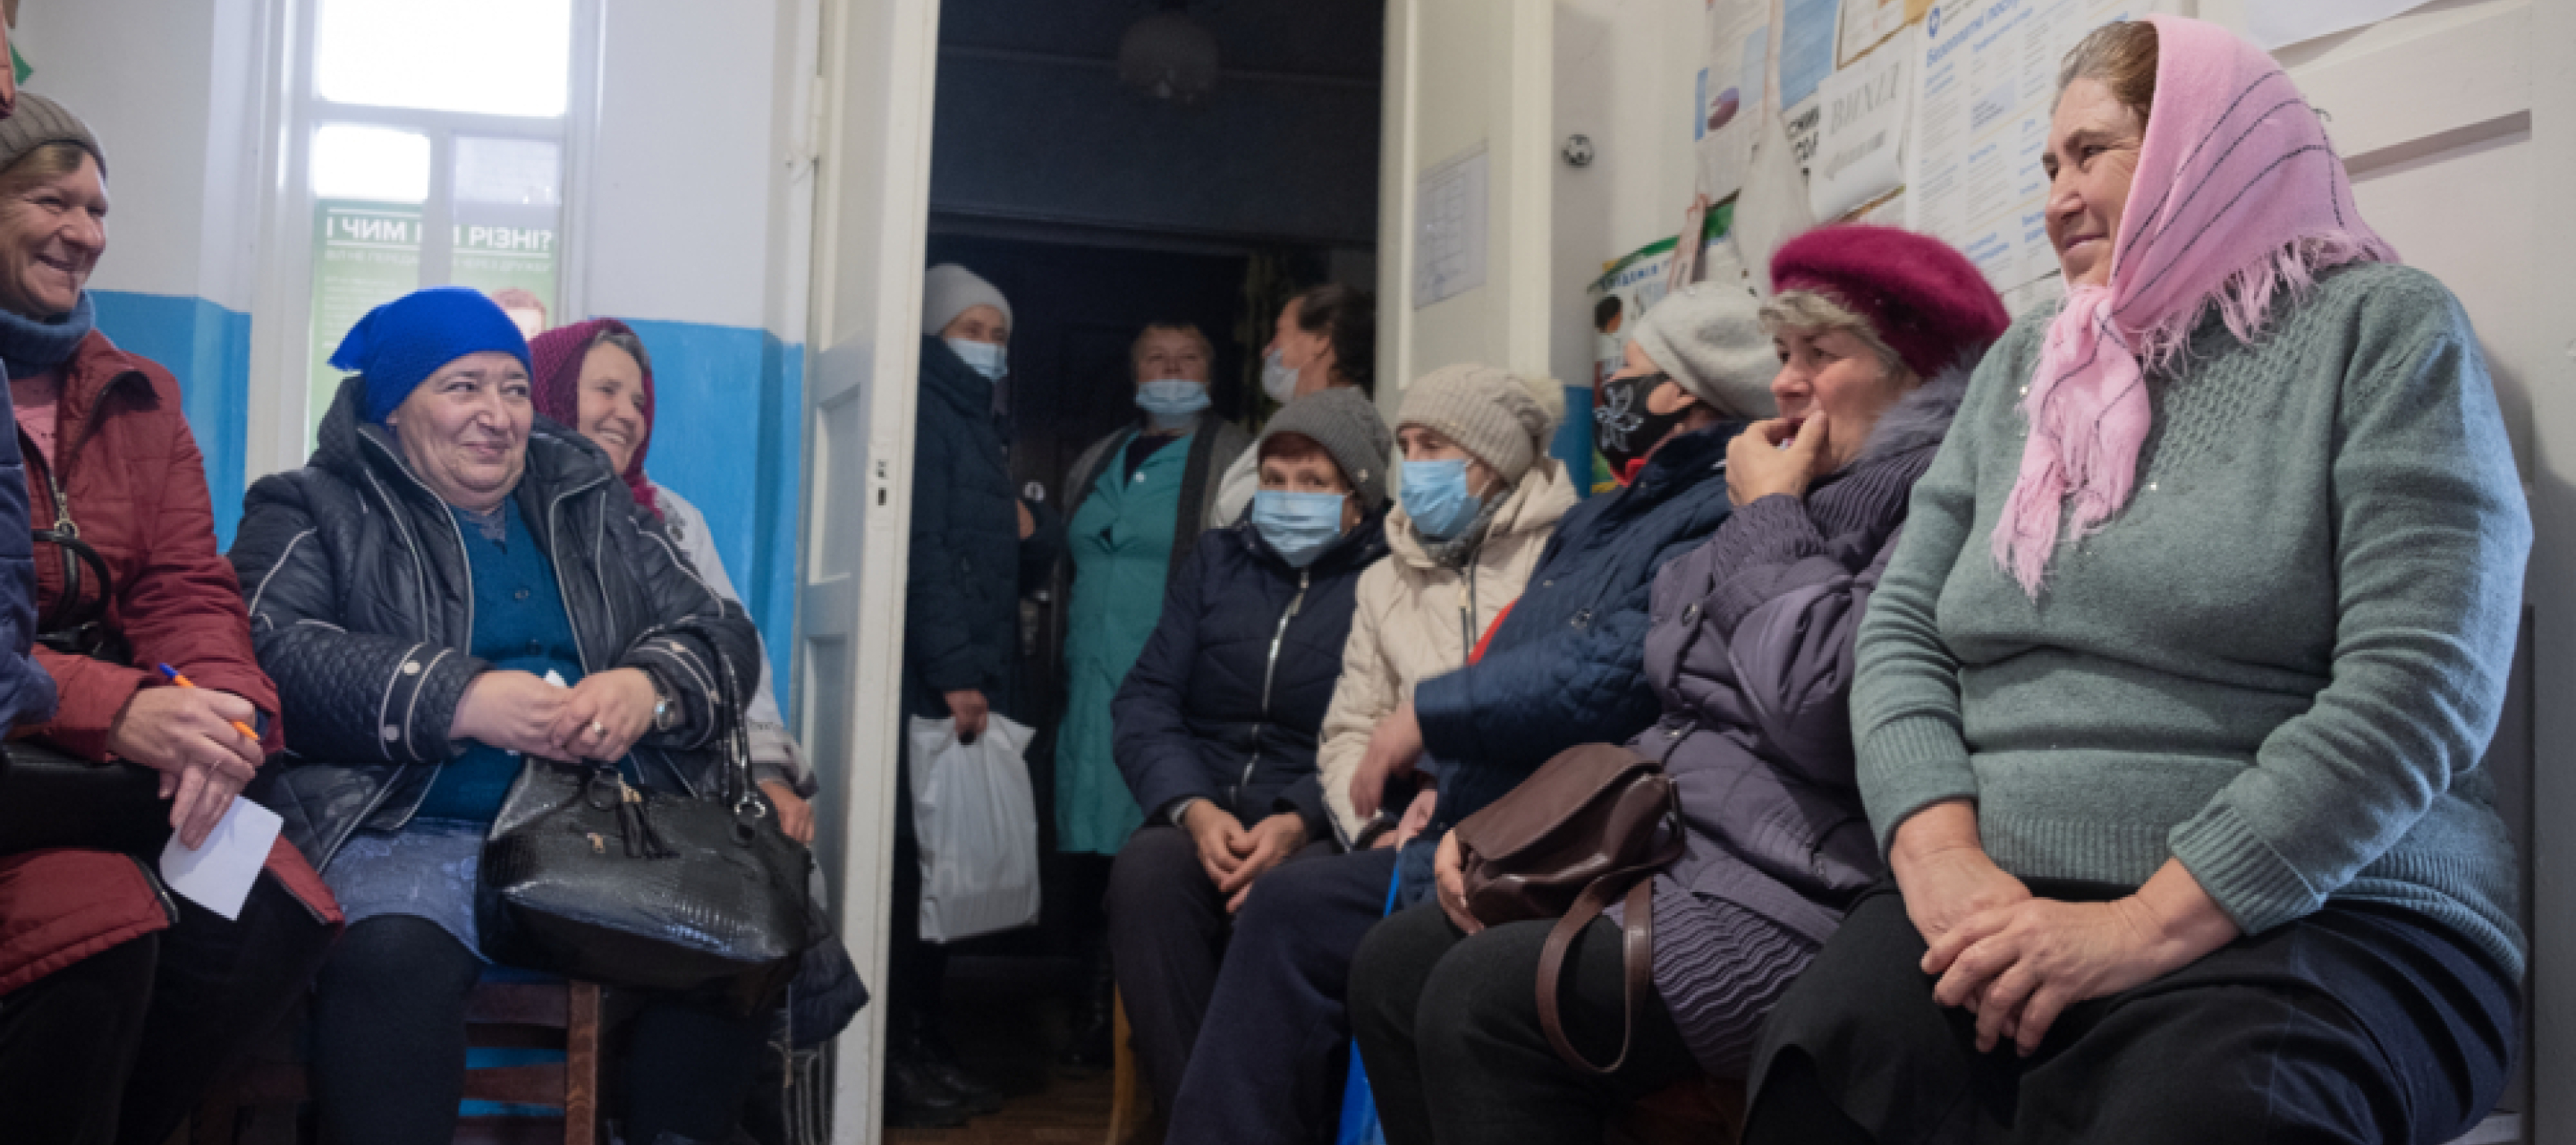 Patient*innen warten in einer unserer mobilen Kliniken auf ihre Behandlung.